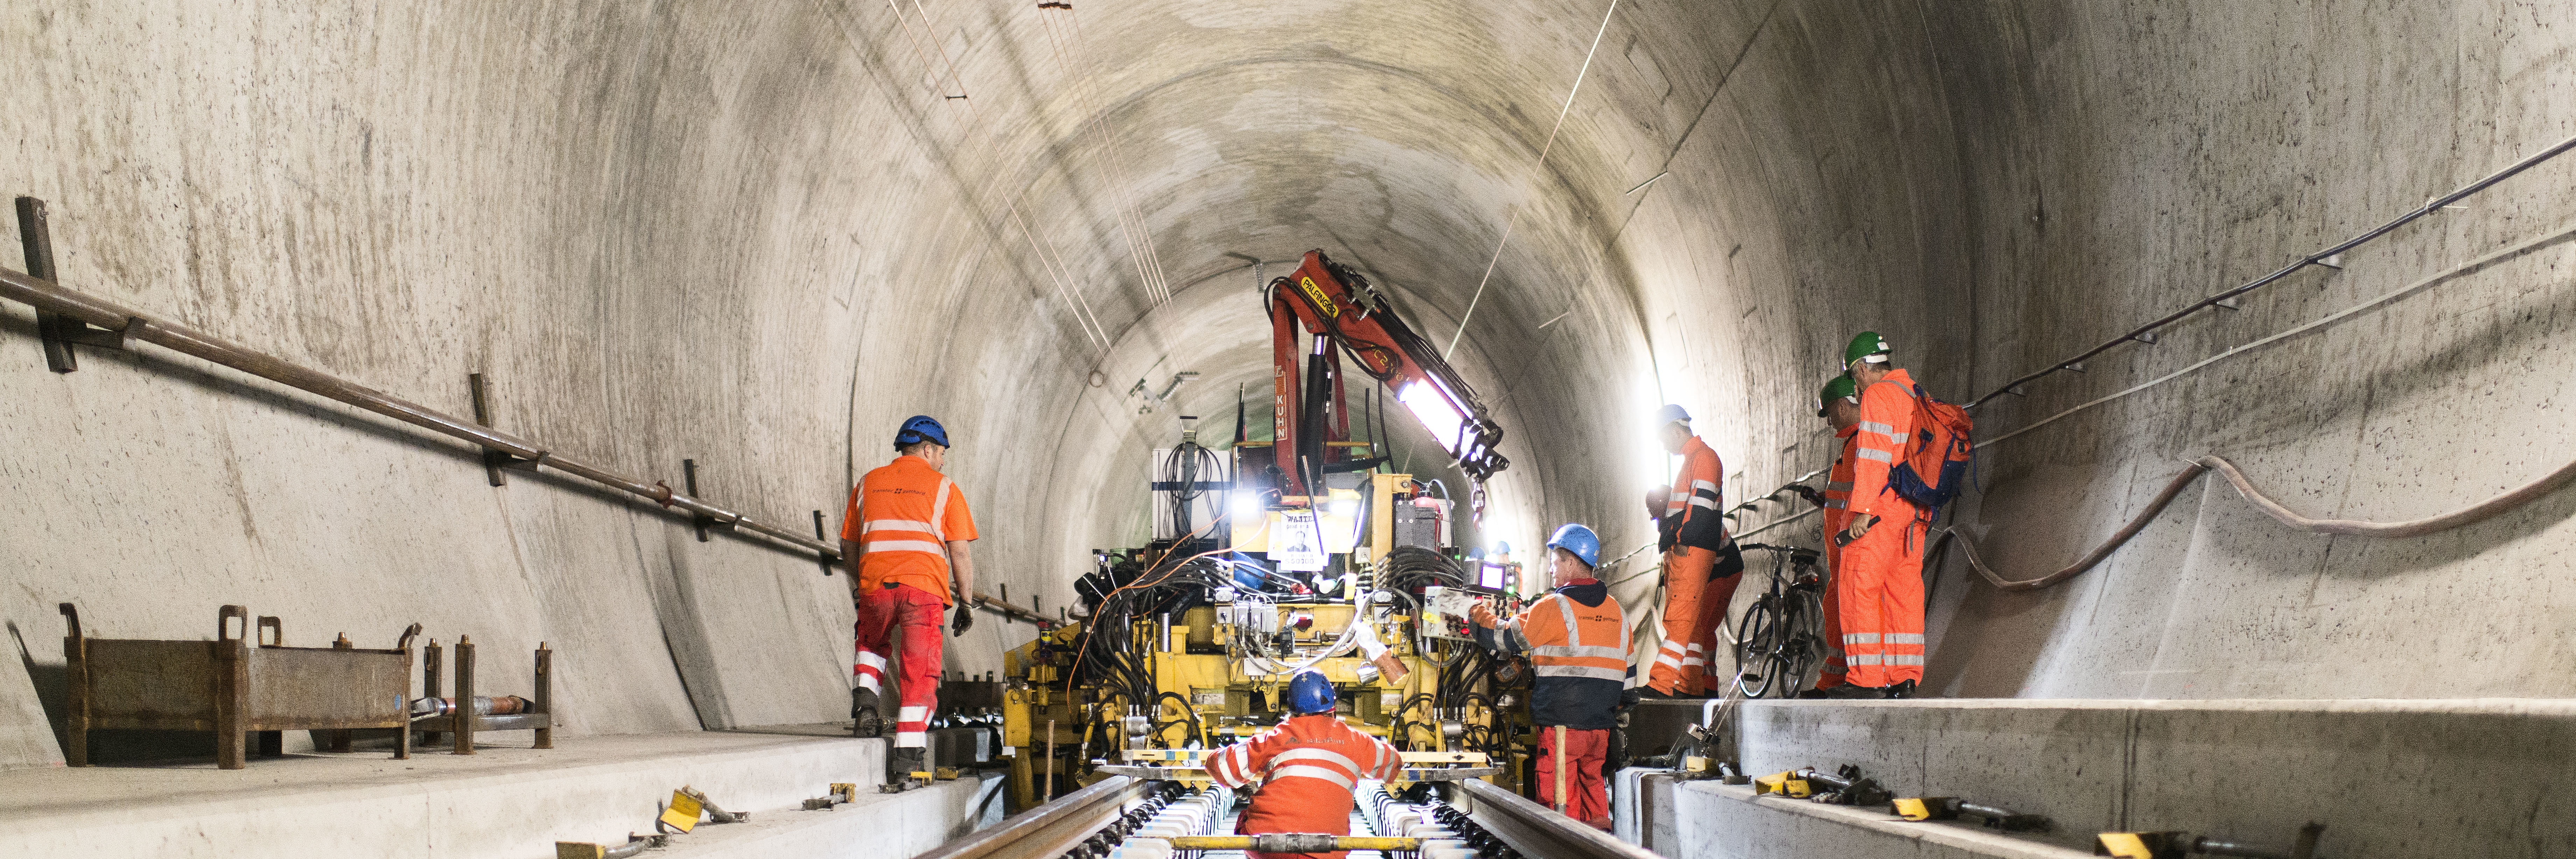 Groundbreaking Tunnel Innovation